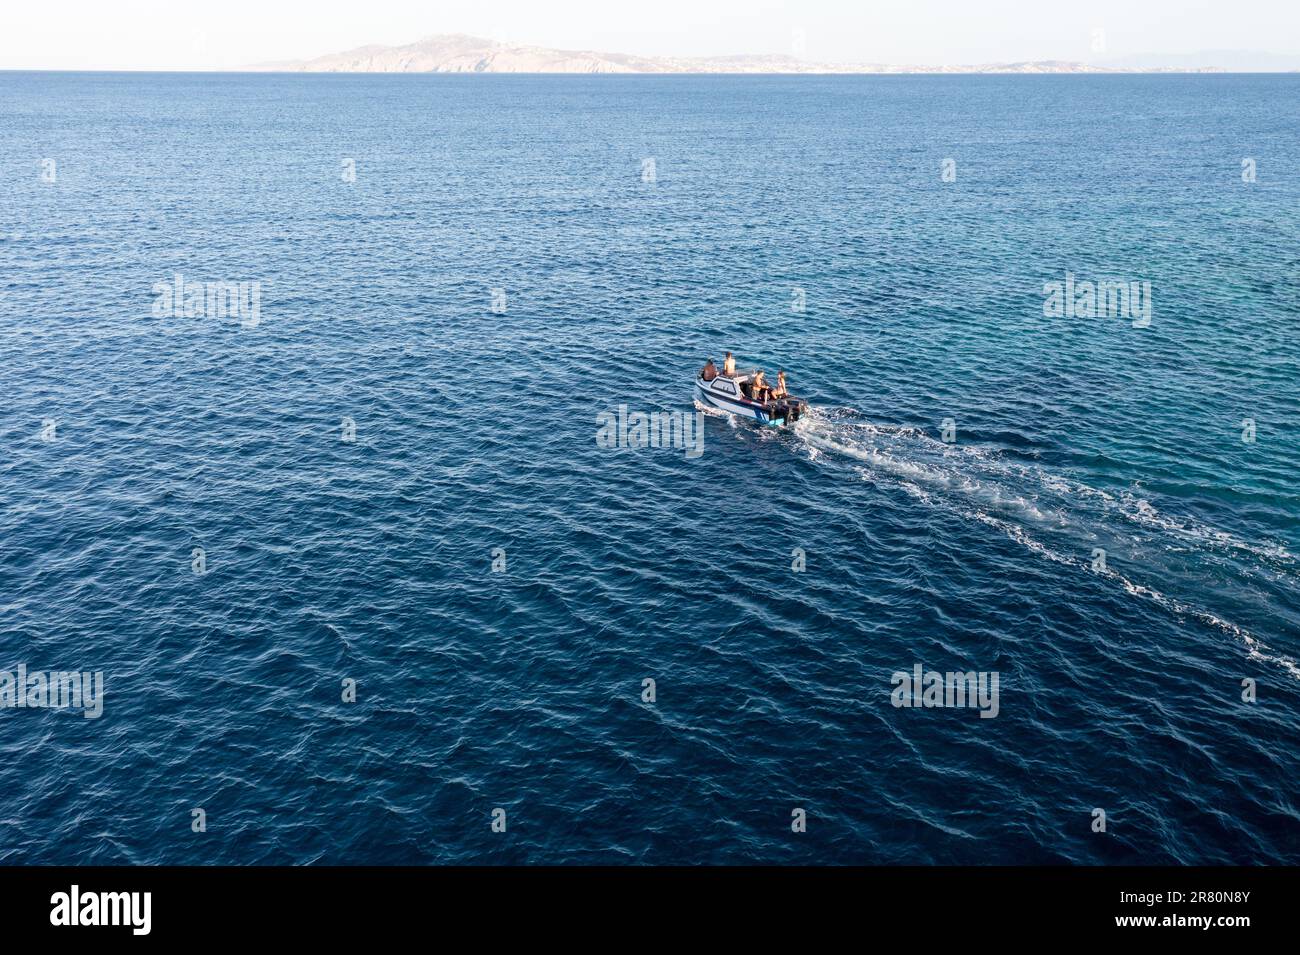 Das Schnellboot fährt im blauen, geriffelten Hintergrund des offenen Meeres der Ägäis. Abenteuer, Entspannung. Tinos Island Kykladen, die Menschen genießen Sommerurlaub in Griechenland. Stockfoto